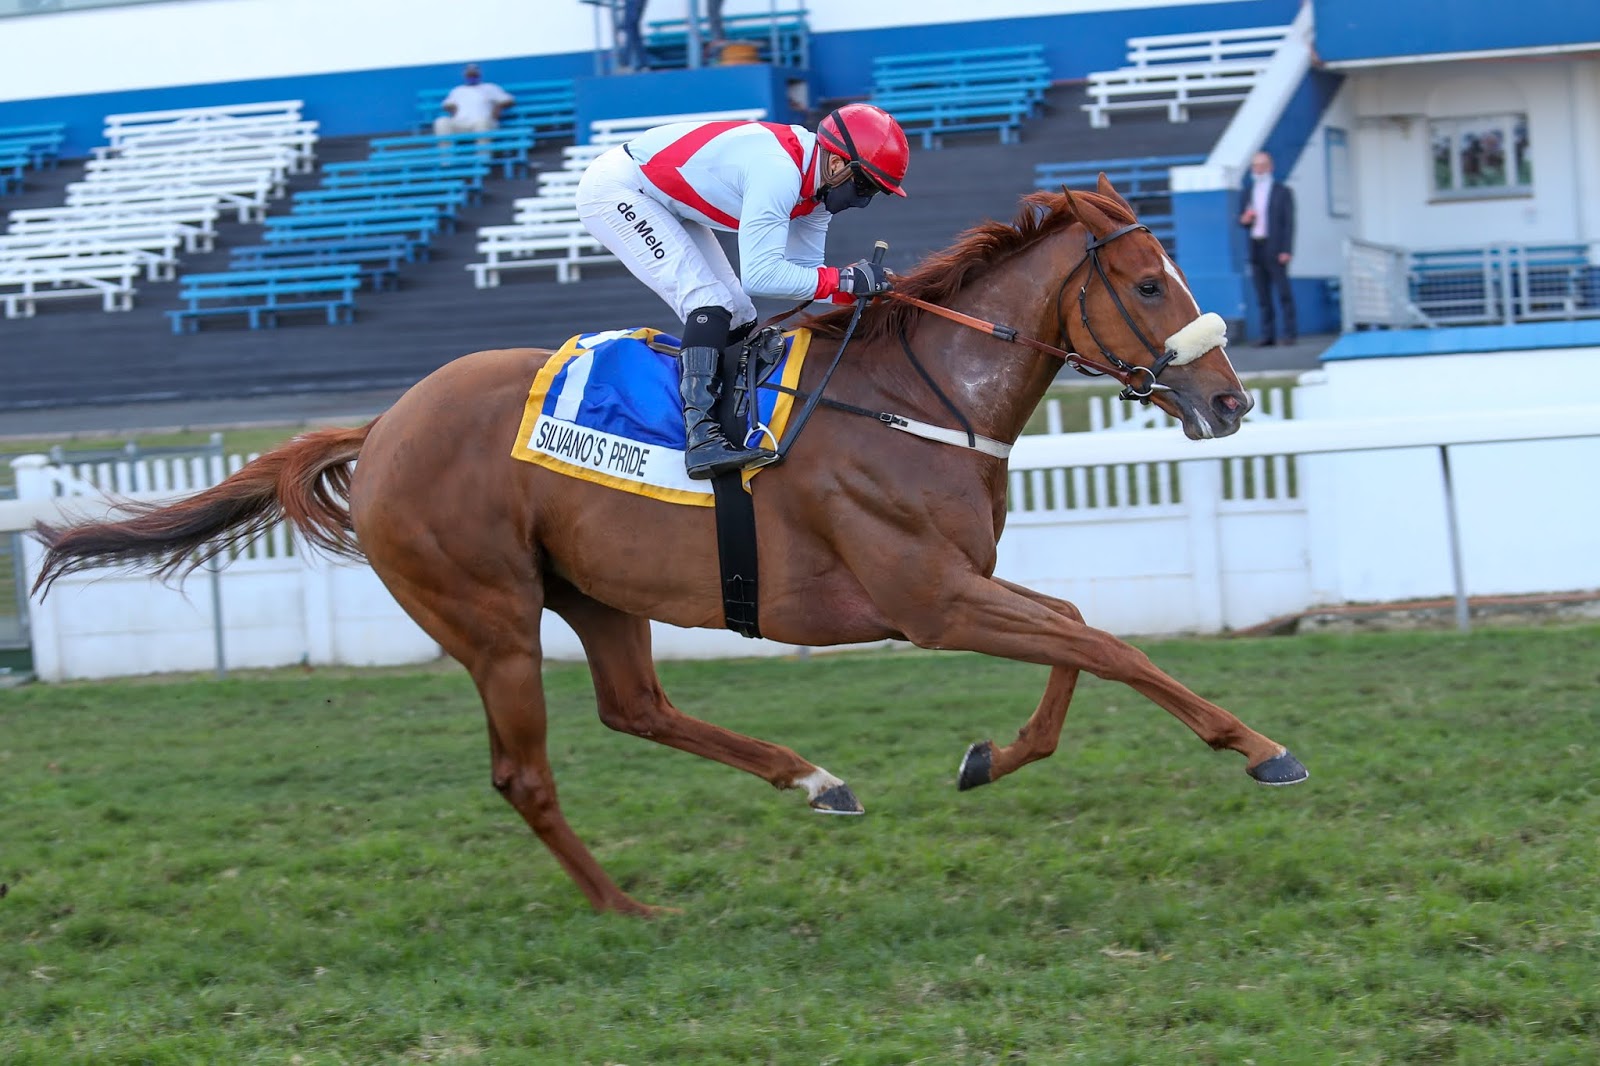 Vodacom Durban July 2020 Horse Profile - Silvano's Pride